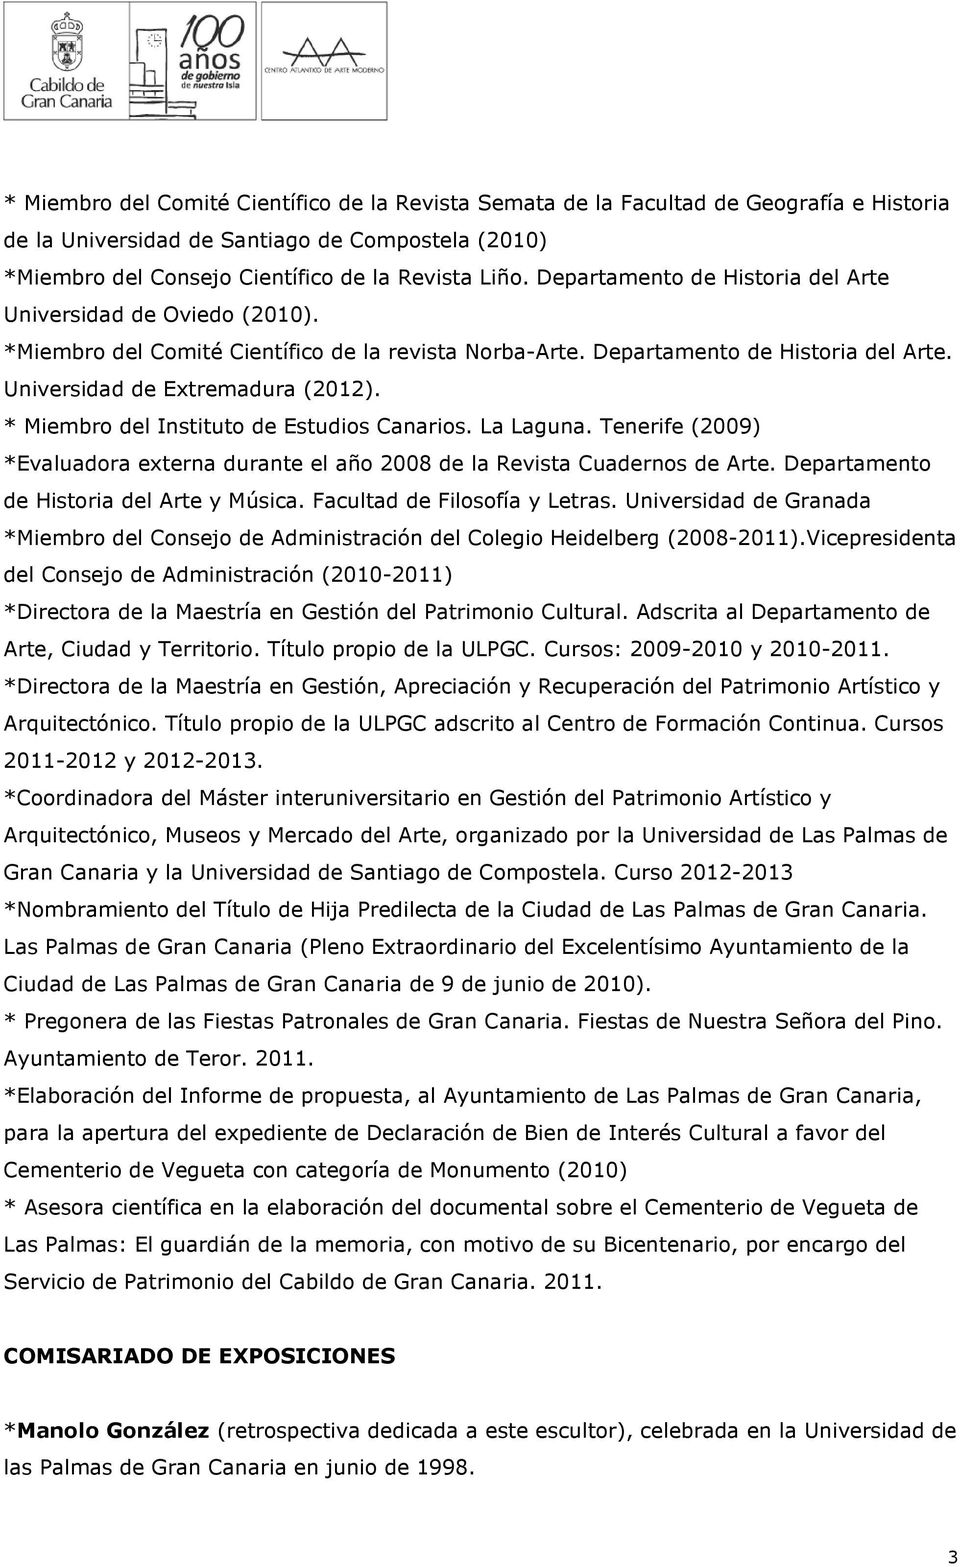 * Miembro del Instituto de Estudios Canarios. La Laguna. Tenerife (2009) *Evaluadora externa durante el año 2008 de la Revista Cuadernos de Arte. Departamento de Historia del Arte y Música.